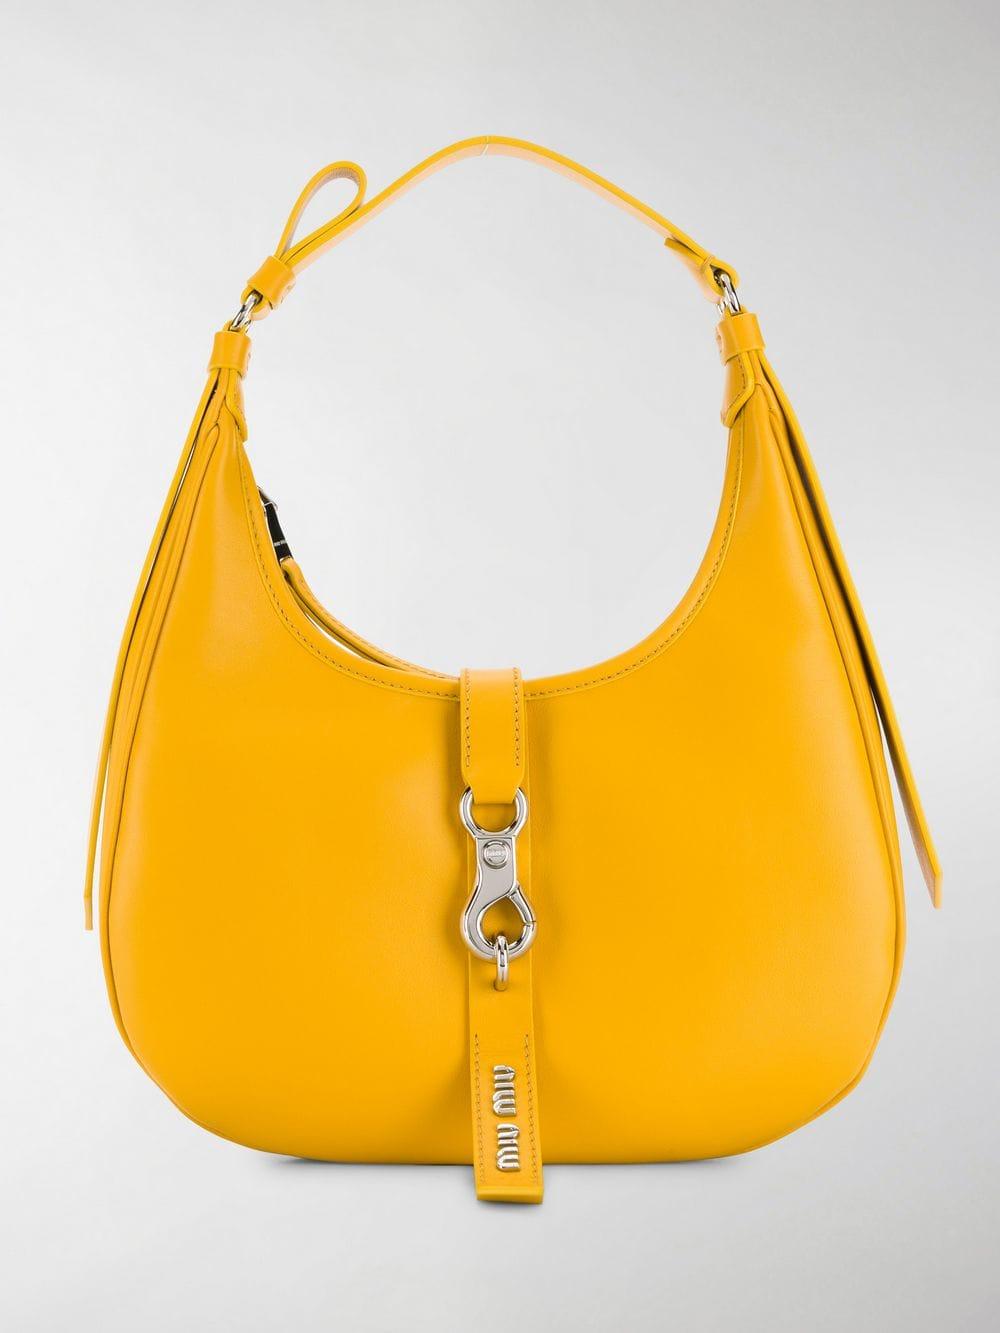 Miu Miu Leather Hobo Bag in Yellow - Lyst